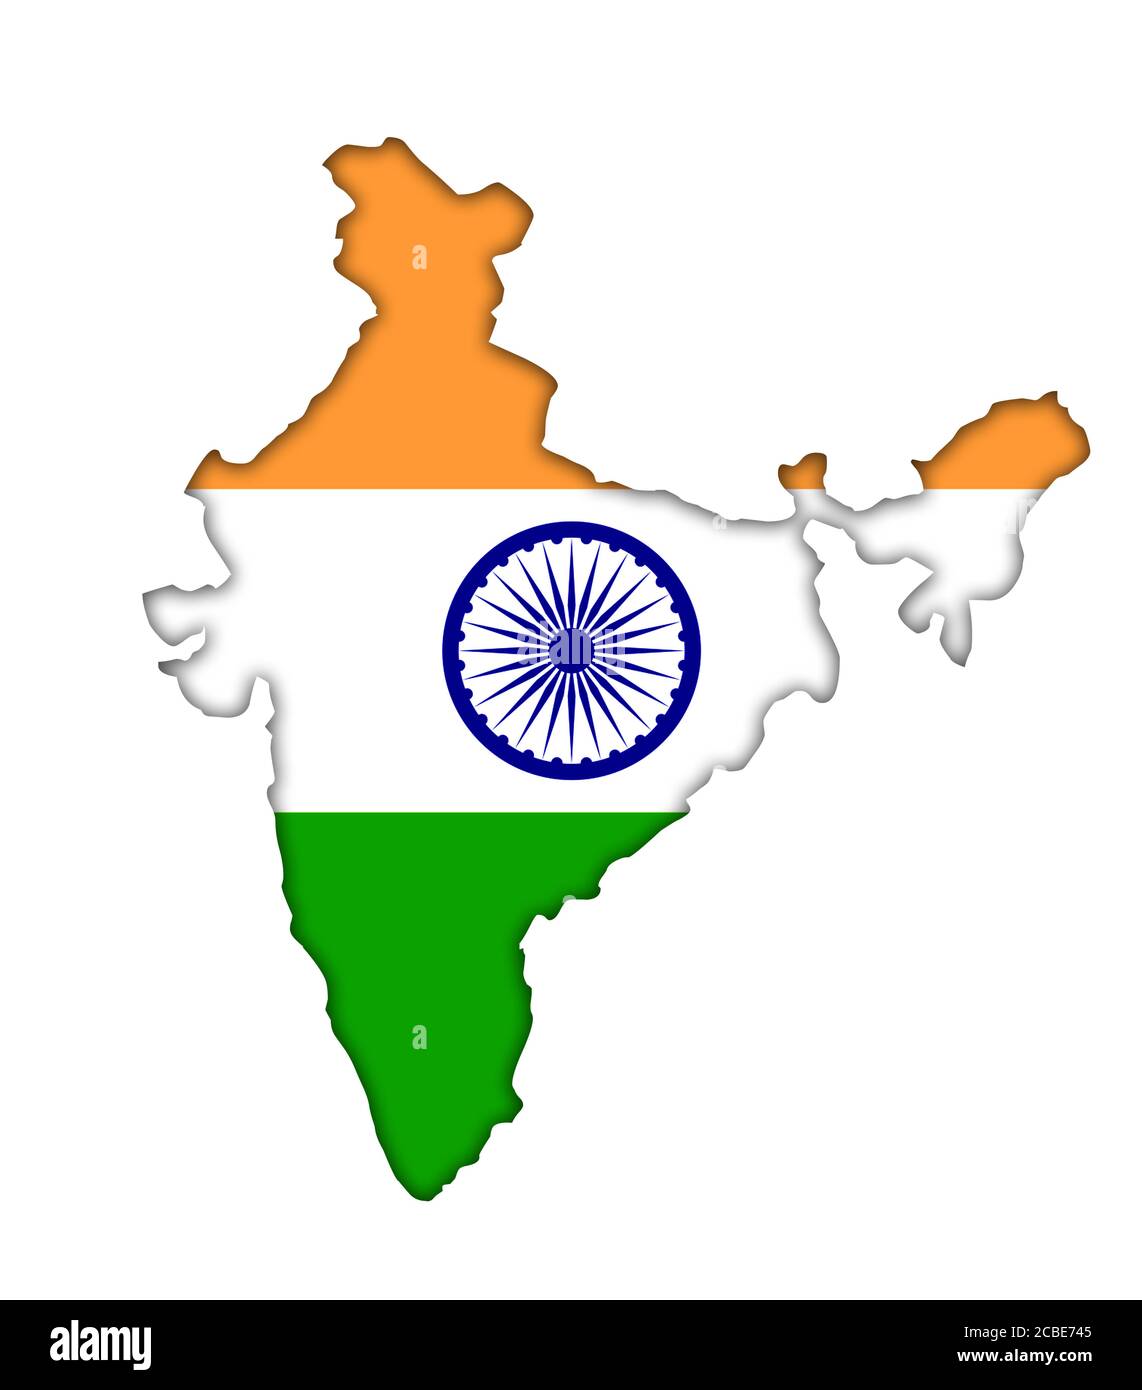 India map flag icon Stock Photo